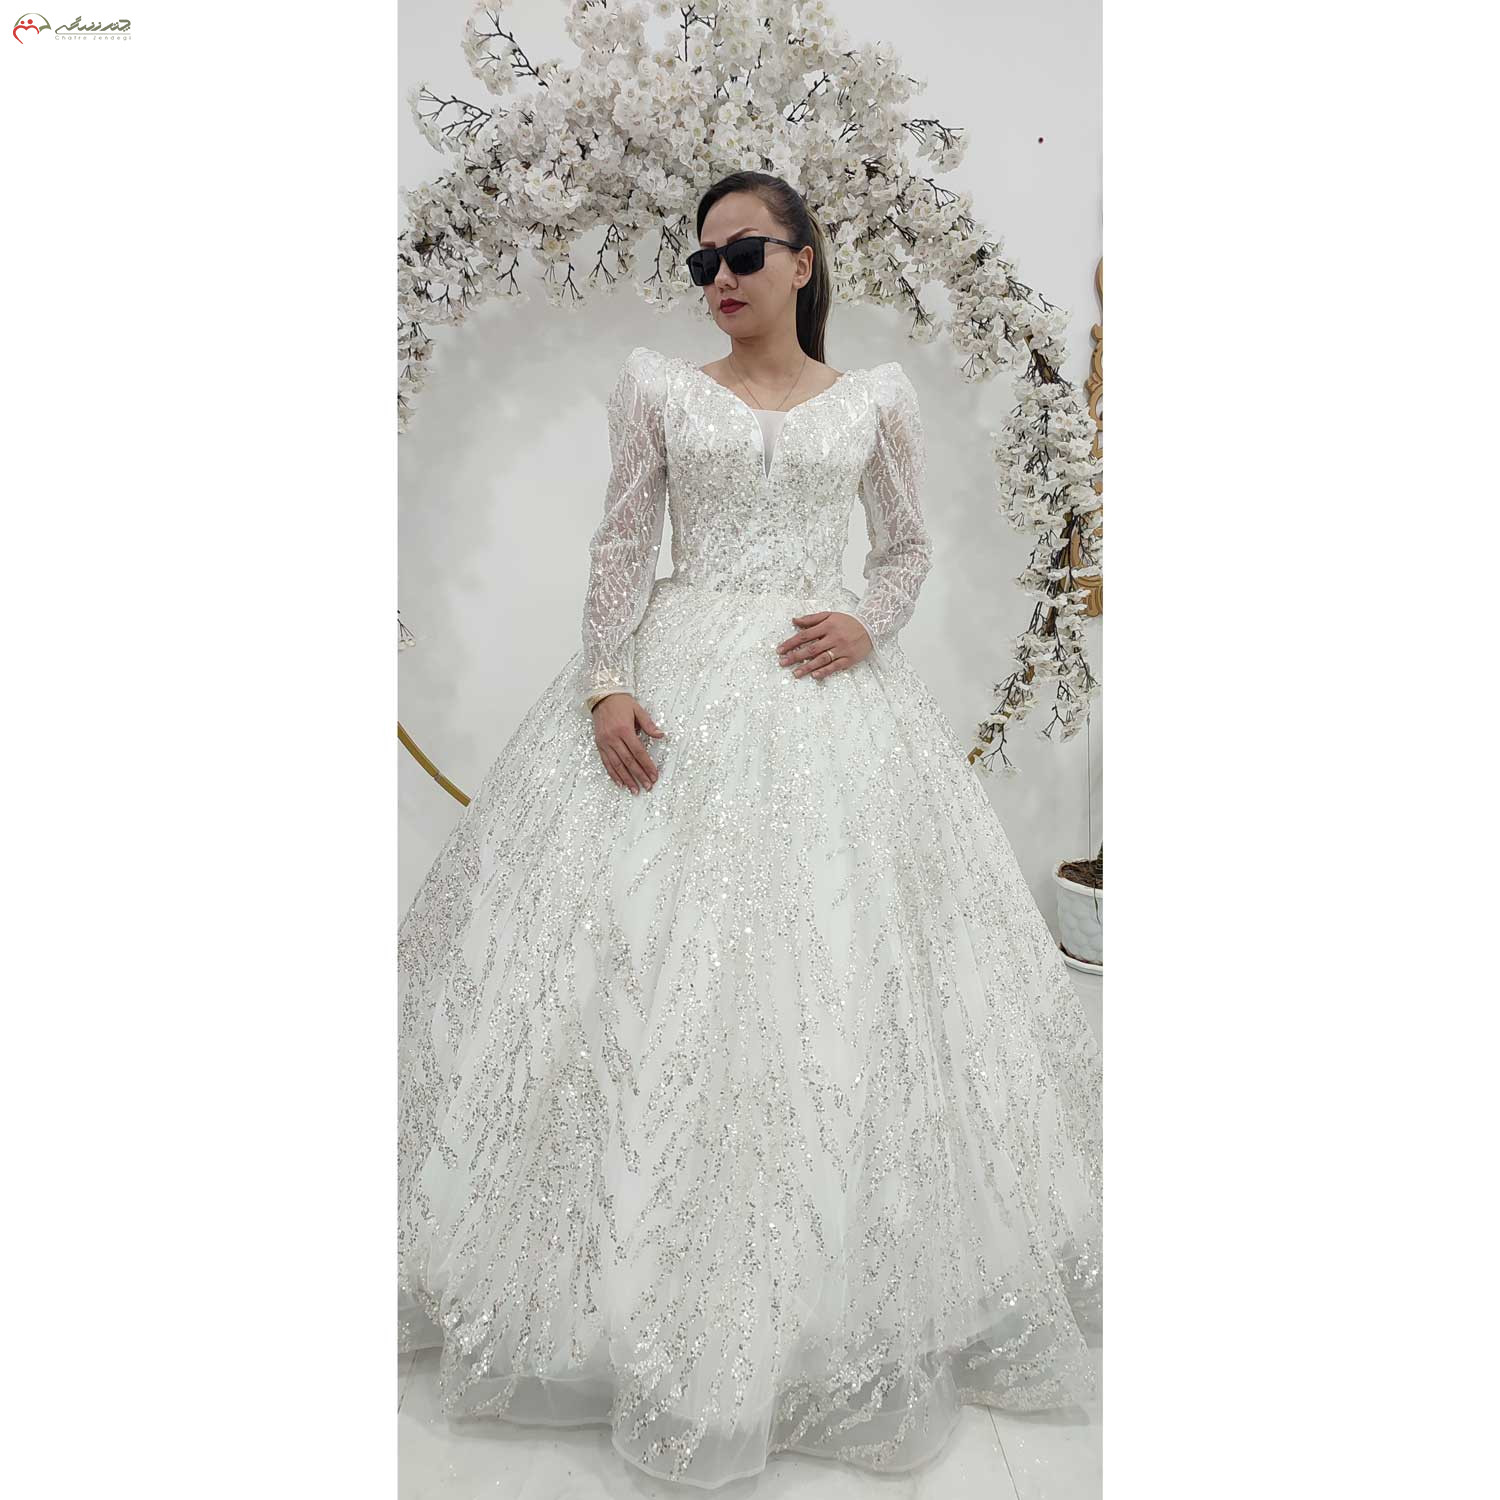 لباس عروس یقه دلبر با پارچه شاین پولک خطی و بالاتنه کار شده - چترزندگی